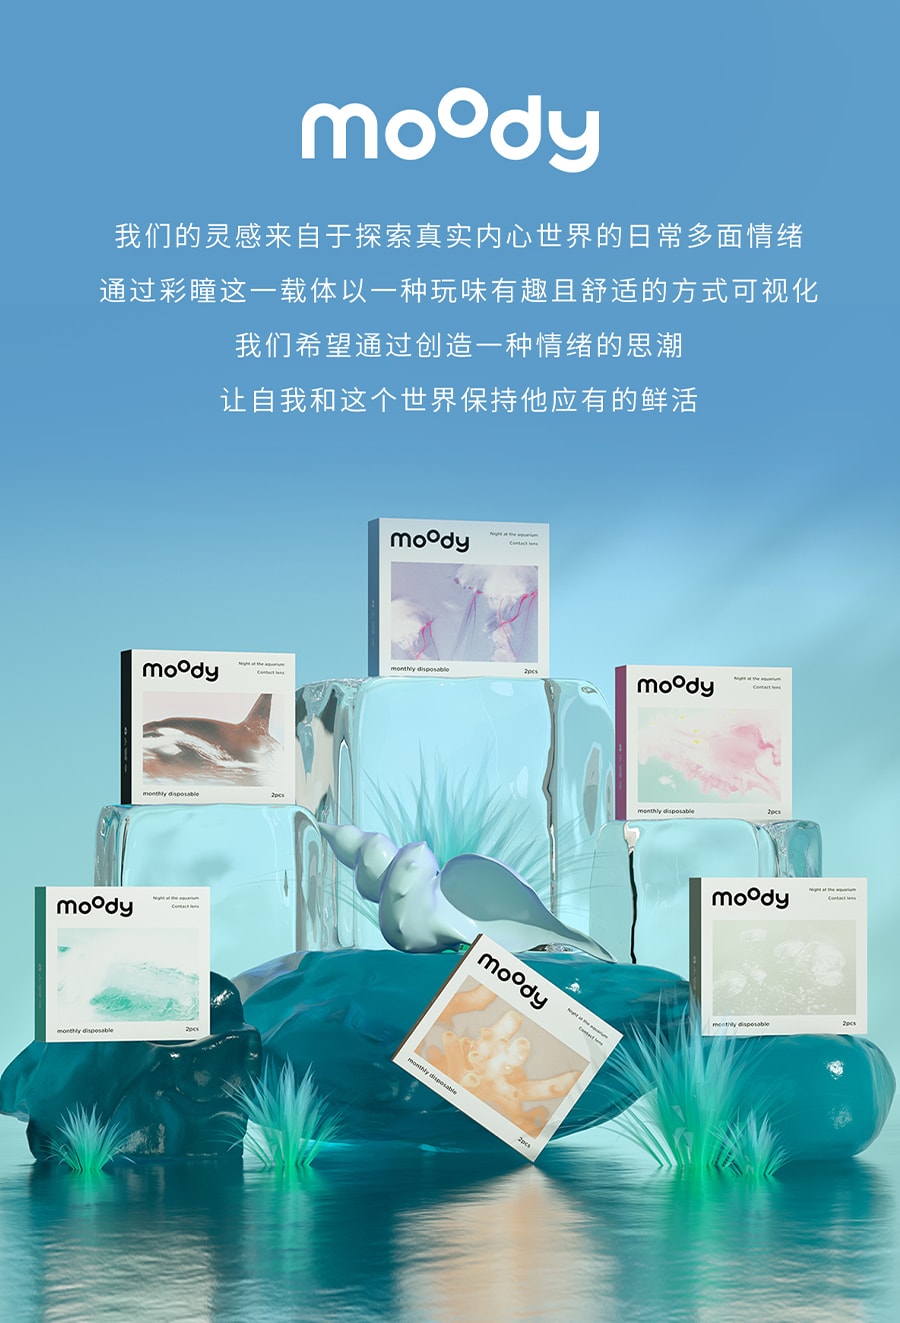 【中国直邮】moody美瞳月抛 水族馆系列 潜水海贝2片装 -7.00(700)